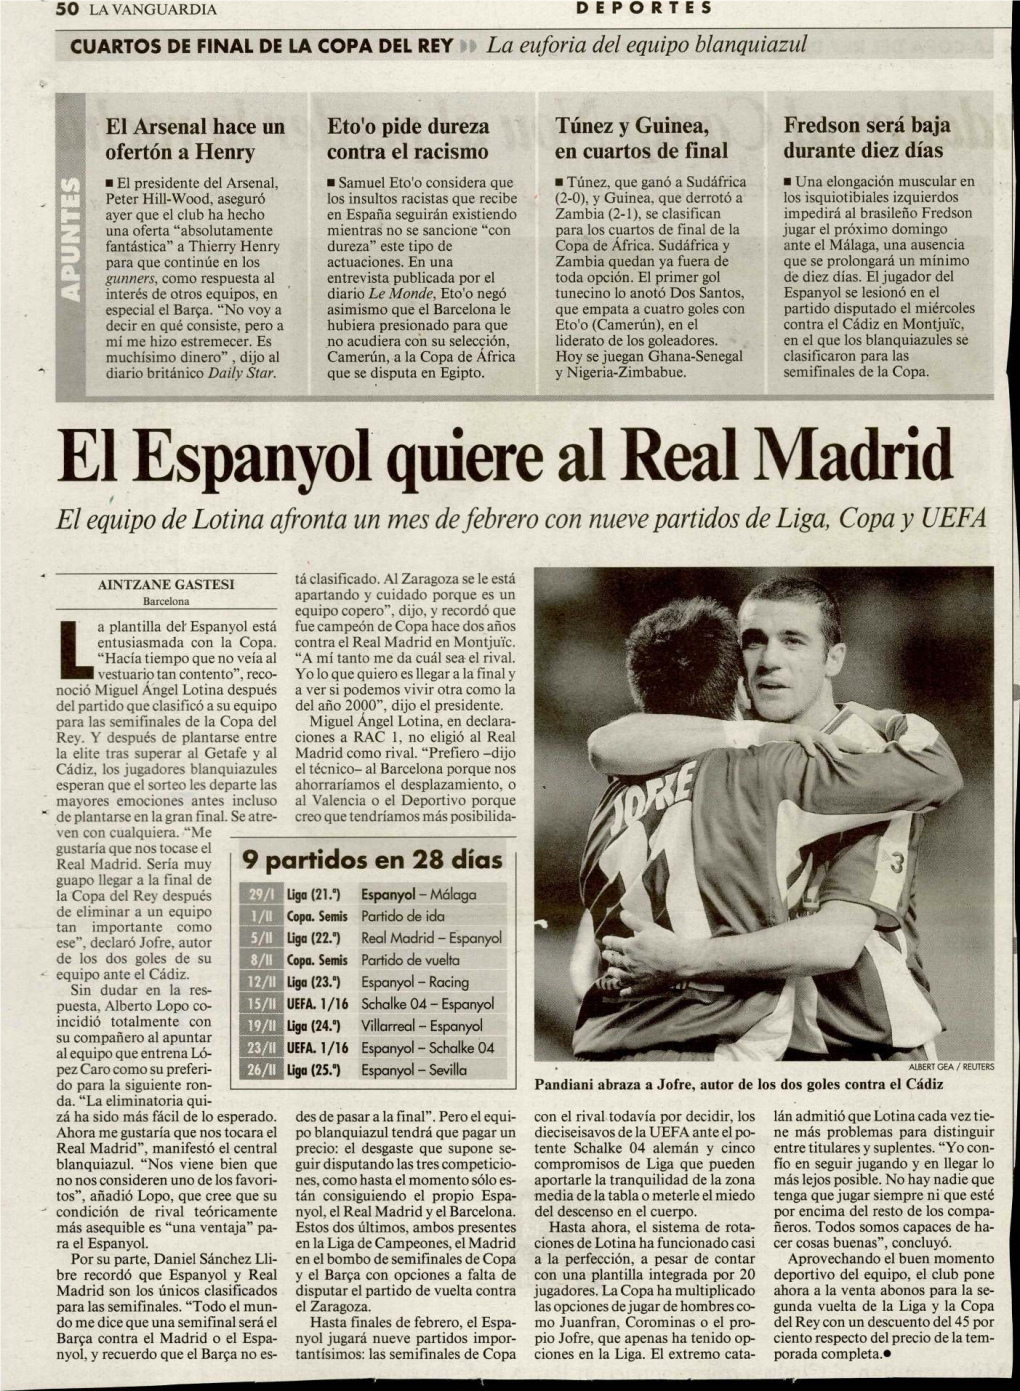 El Espanyol Quiere Al Real Madrid El Equipo De Lotina Afronta Un Mes De Febrero Con Nueve Partidos De Liga, Copa Y UEFA